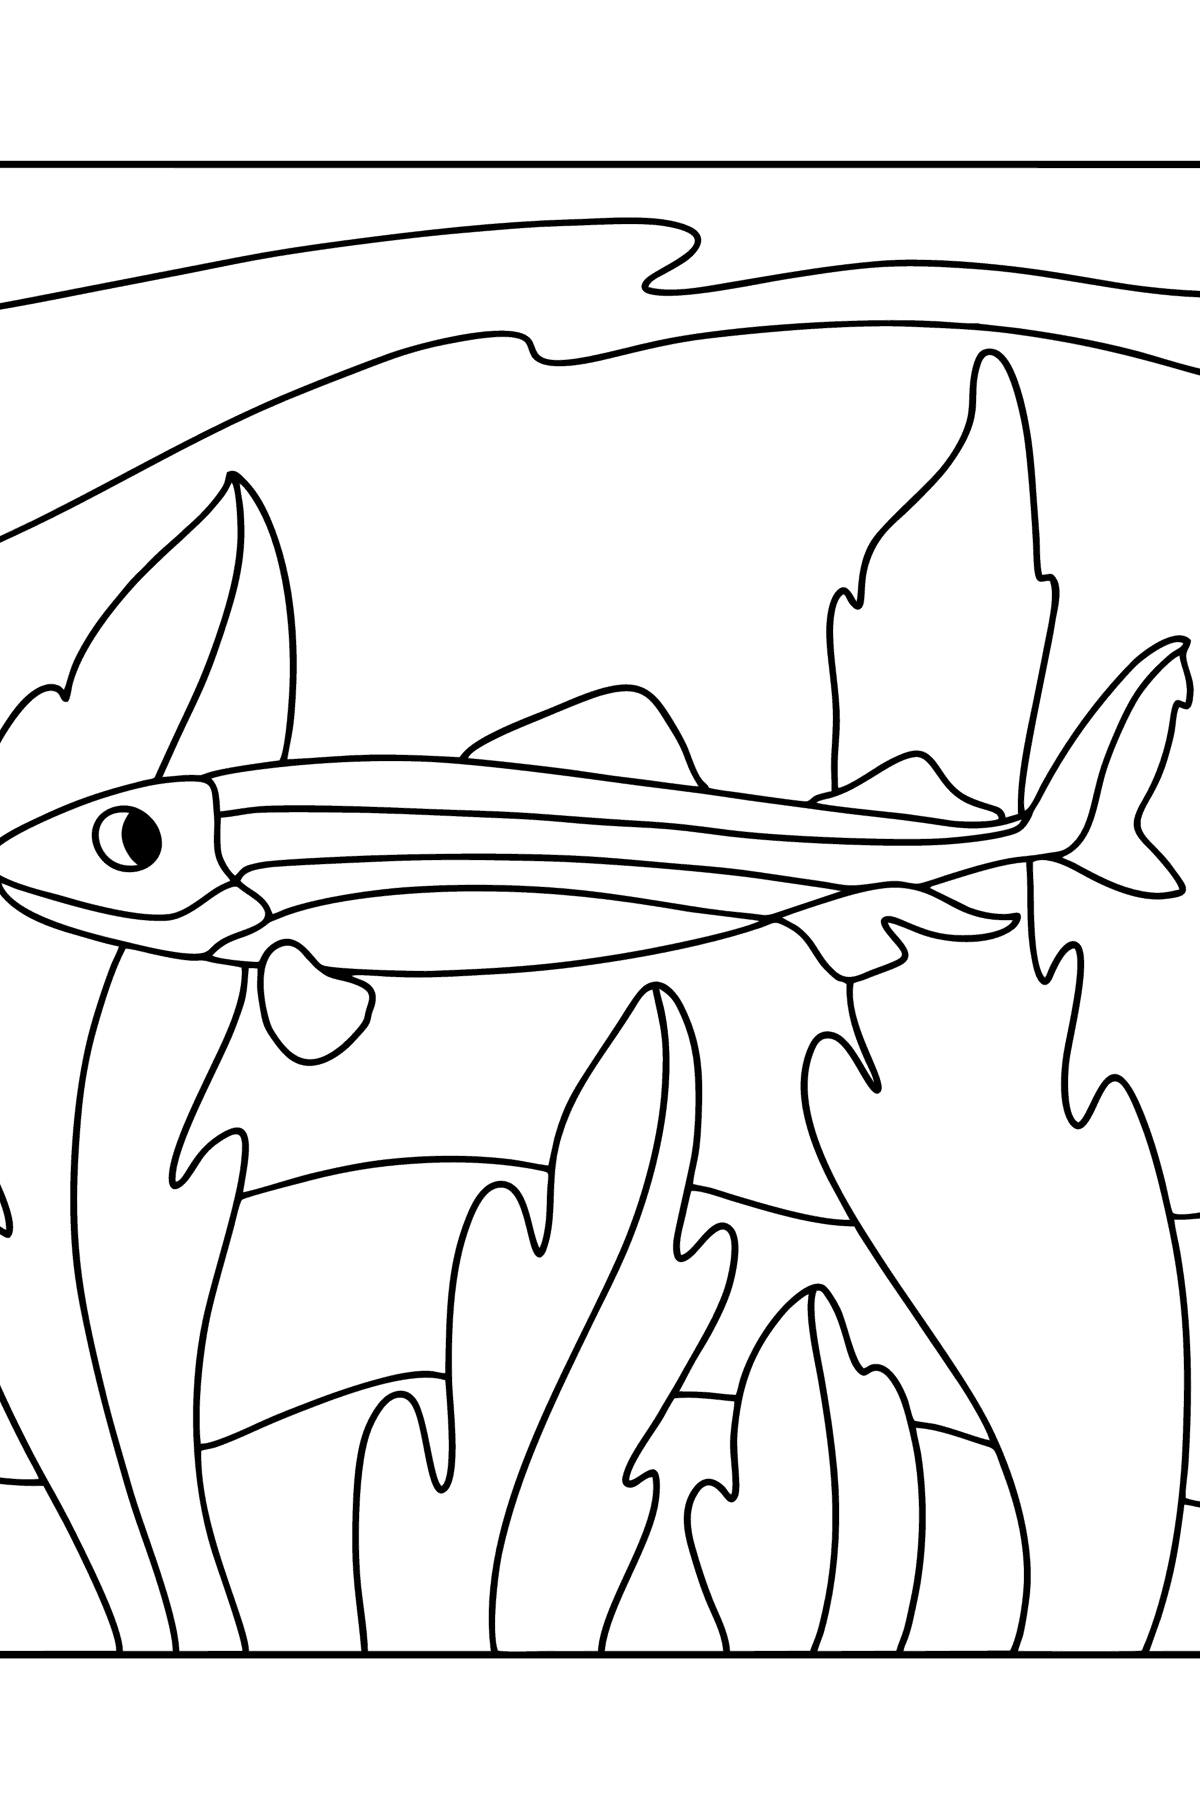 Boyama sayfası timsah köpekbalığı - Boyamalar çocuklar için